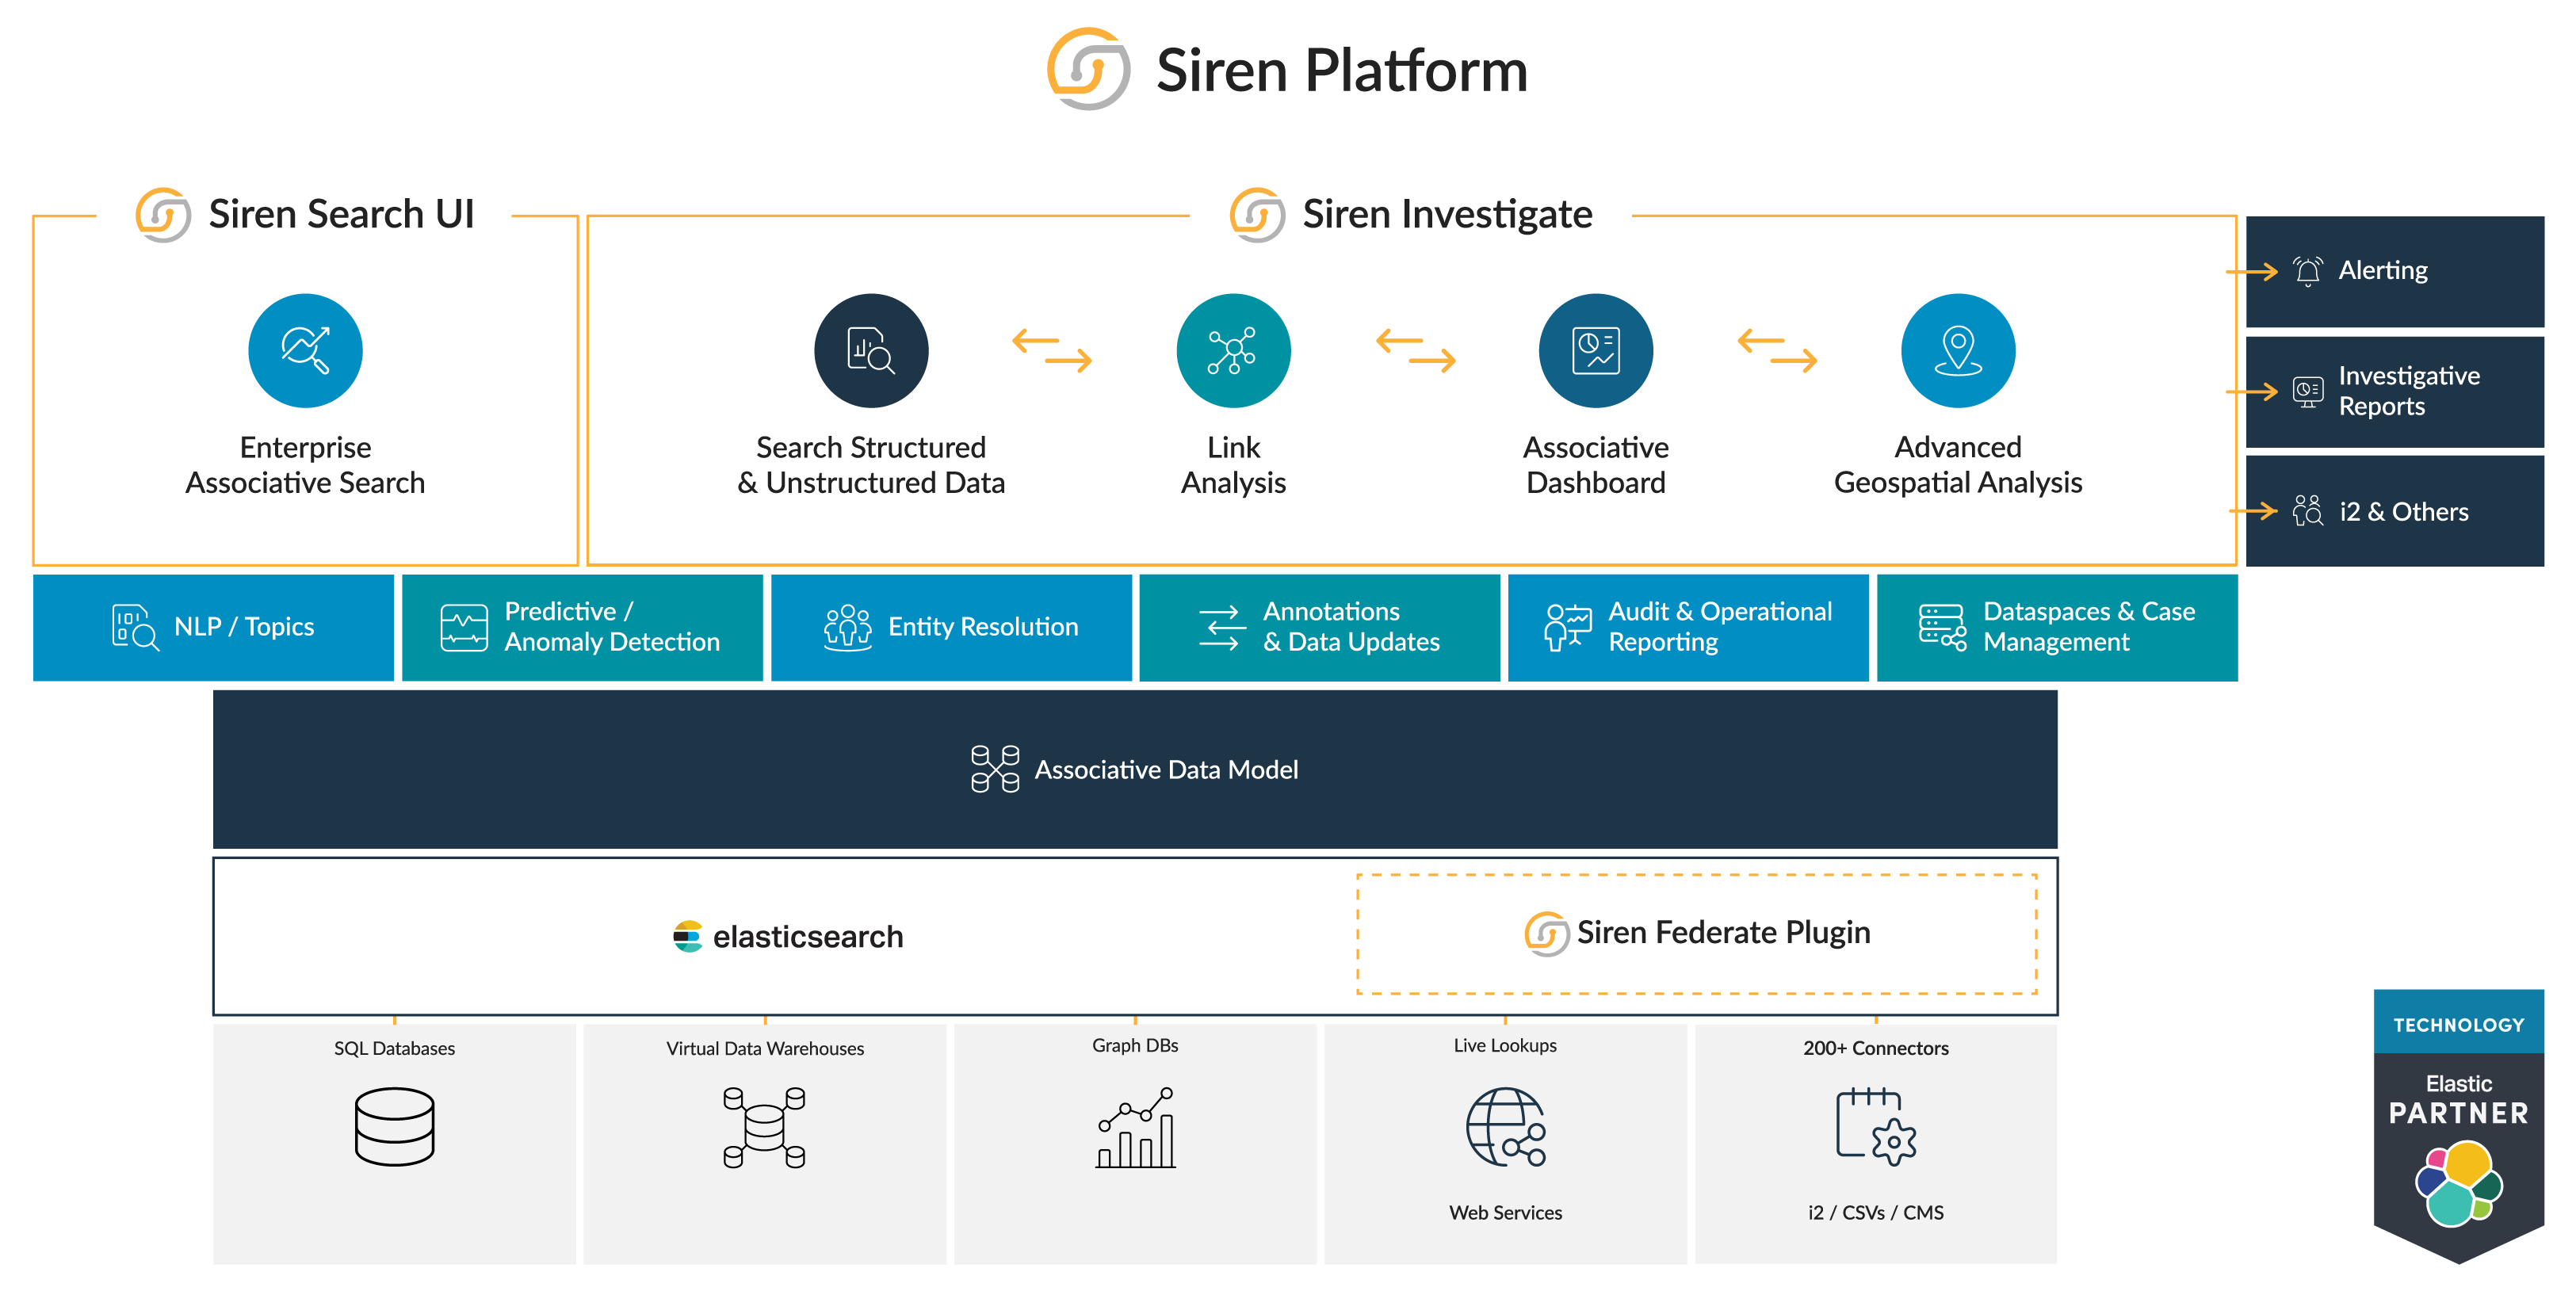 Siren Platform architecture diagram